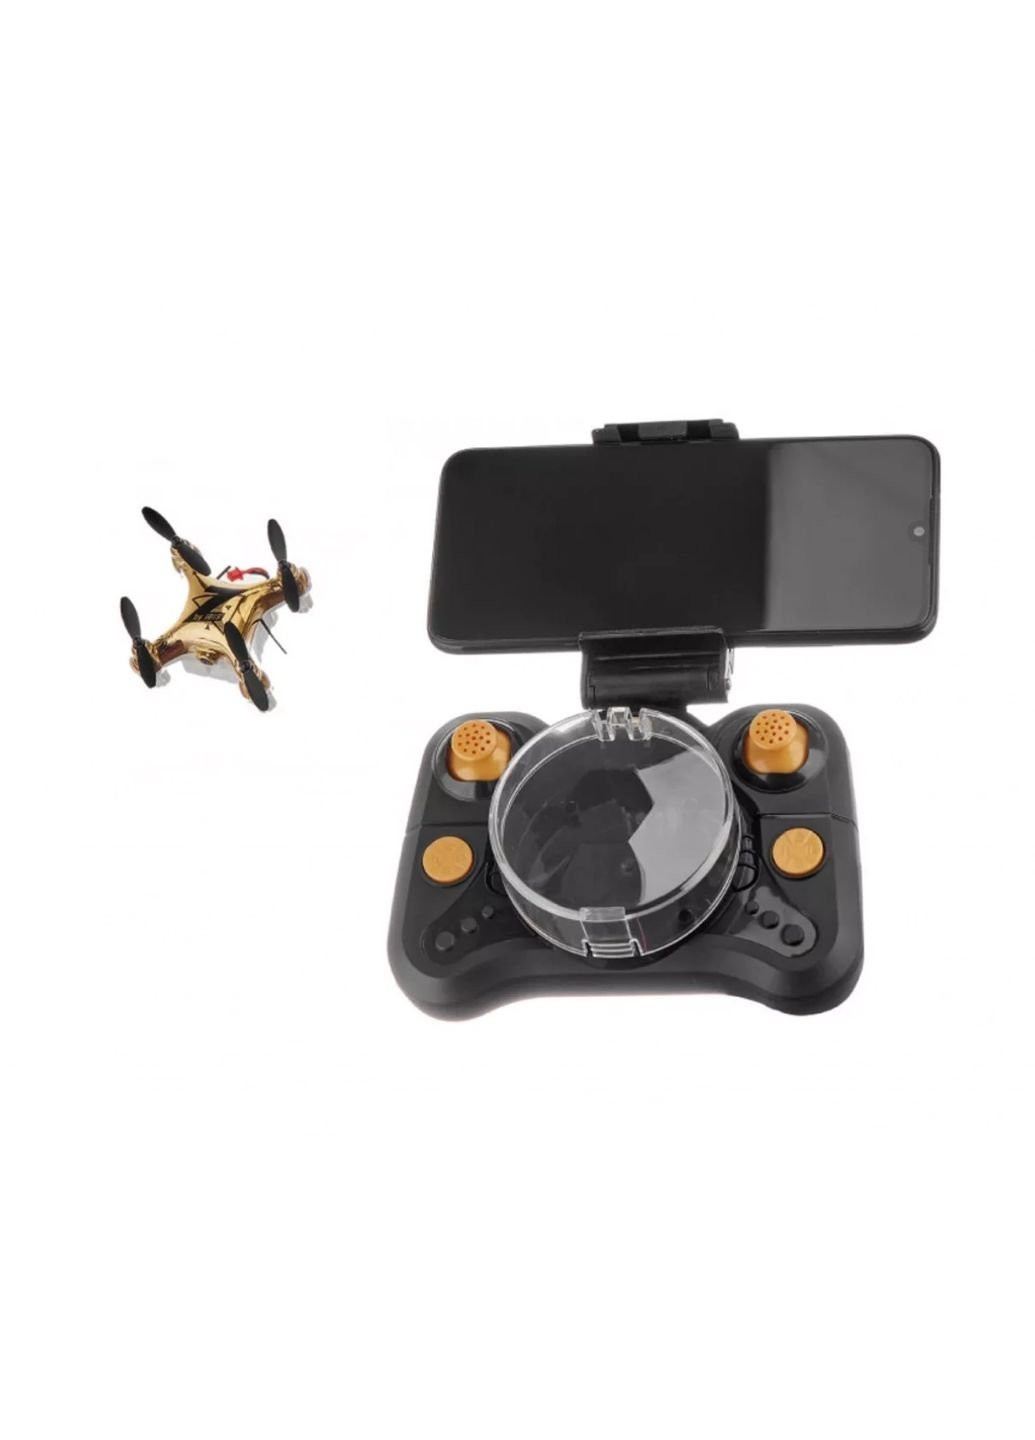 Іграшка радіокерована Квадрокоптер з камерою Малюк Zippi з дод. акумулятором, зол (CF922 gold) Zipp Toys (254069928)